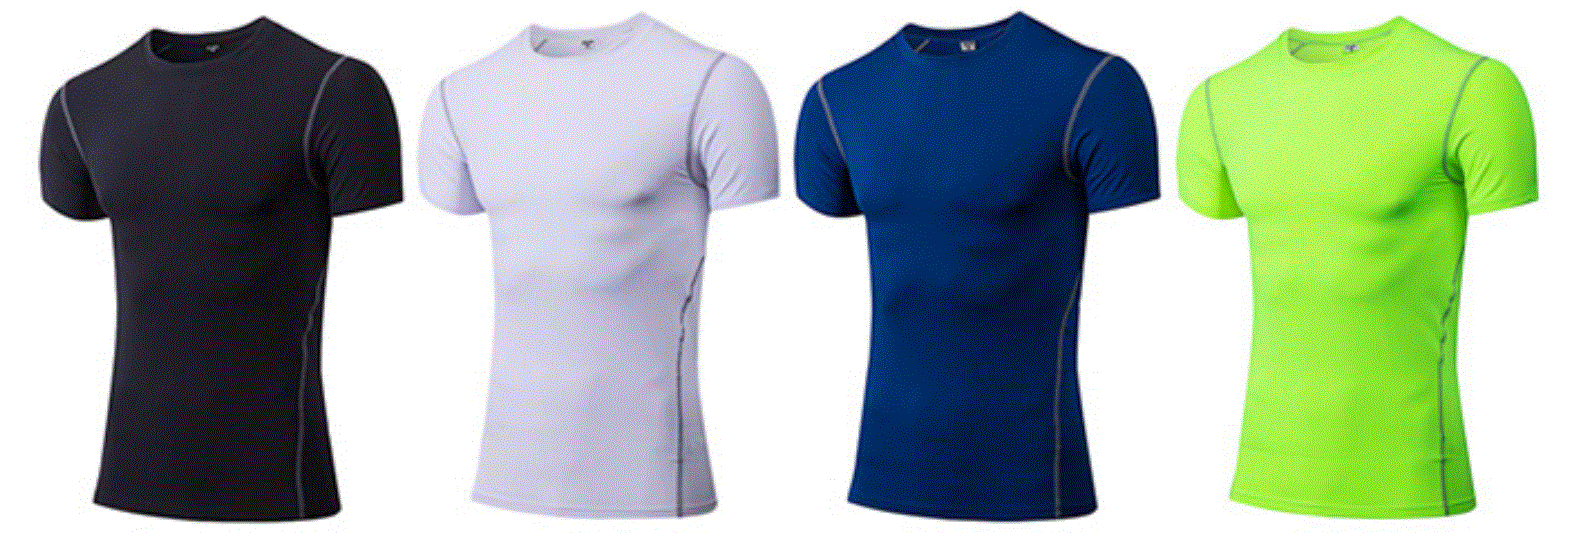 [Gearbest] Kompressions-Shirt in verschiedenen Farben und Größen ab 4,54 Euro (gratis Versand)!